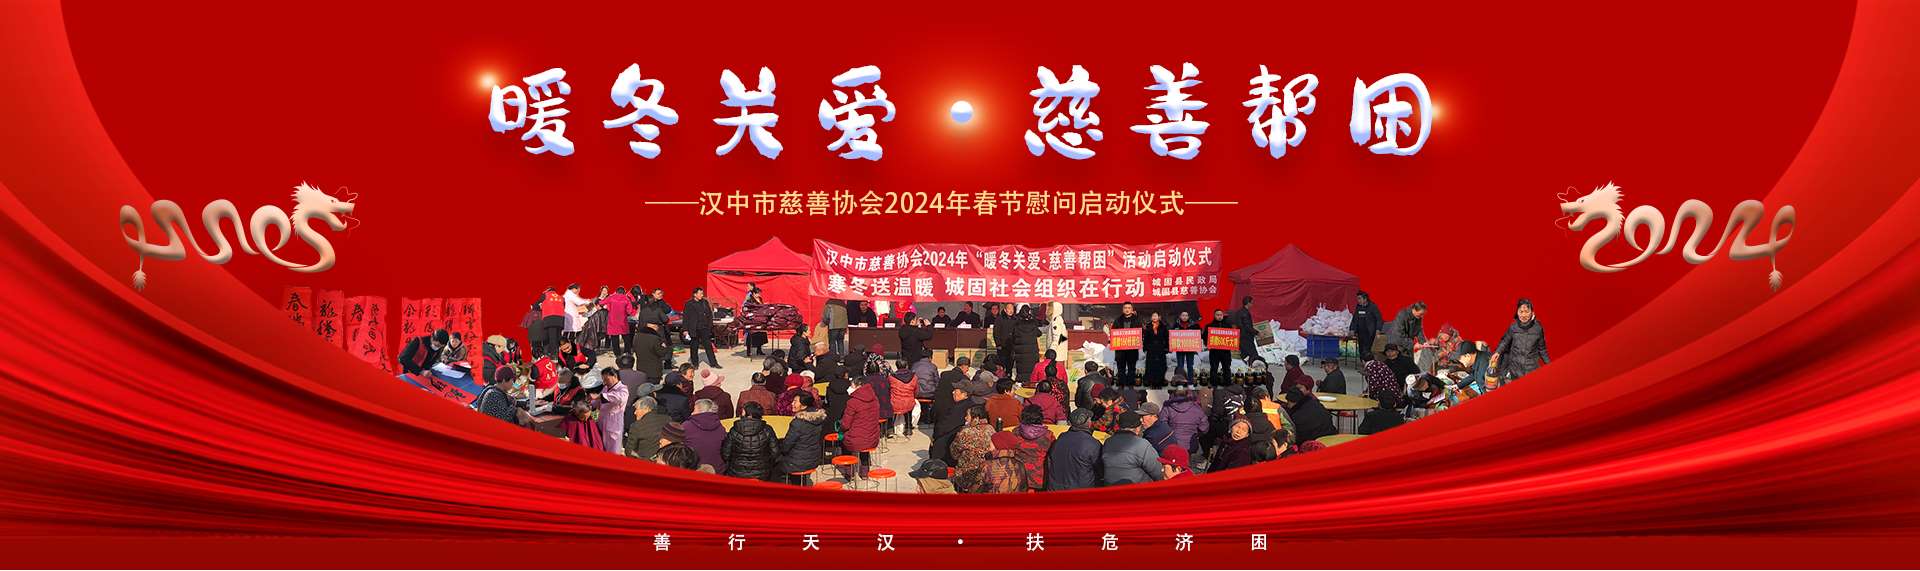 汉中市慈善协会2024年春节慰问活动启动仪式